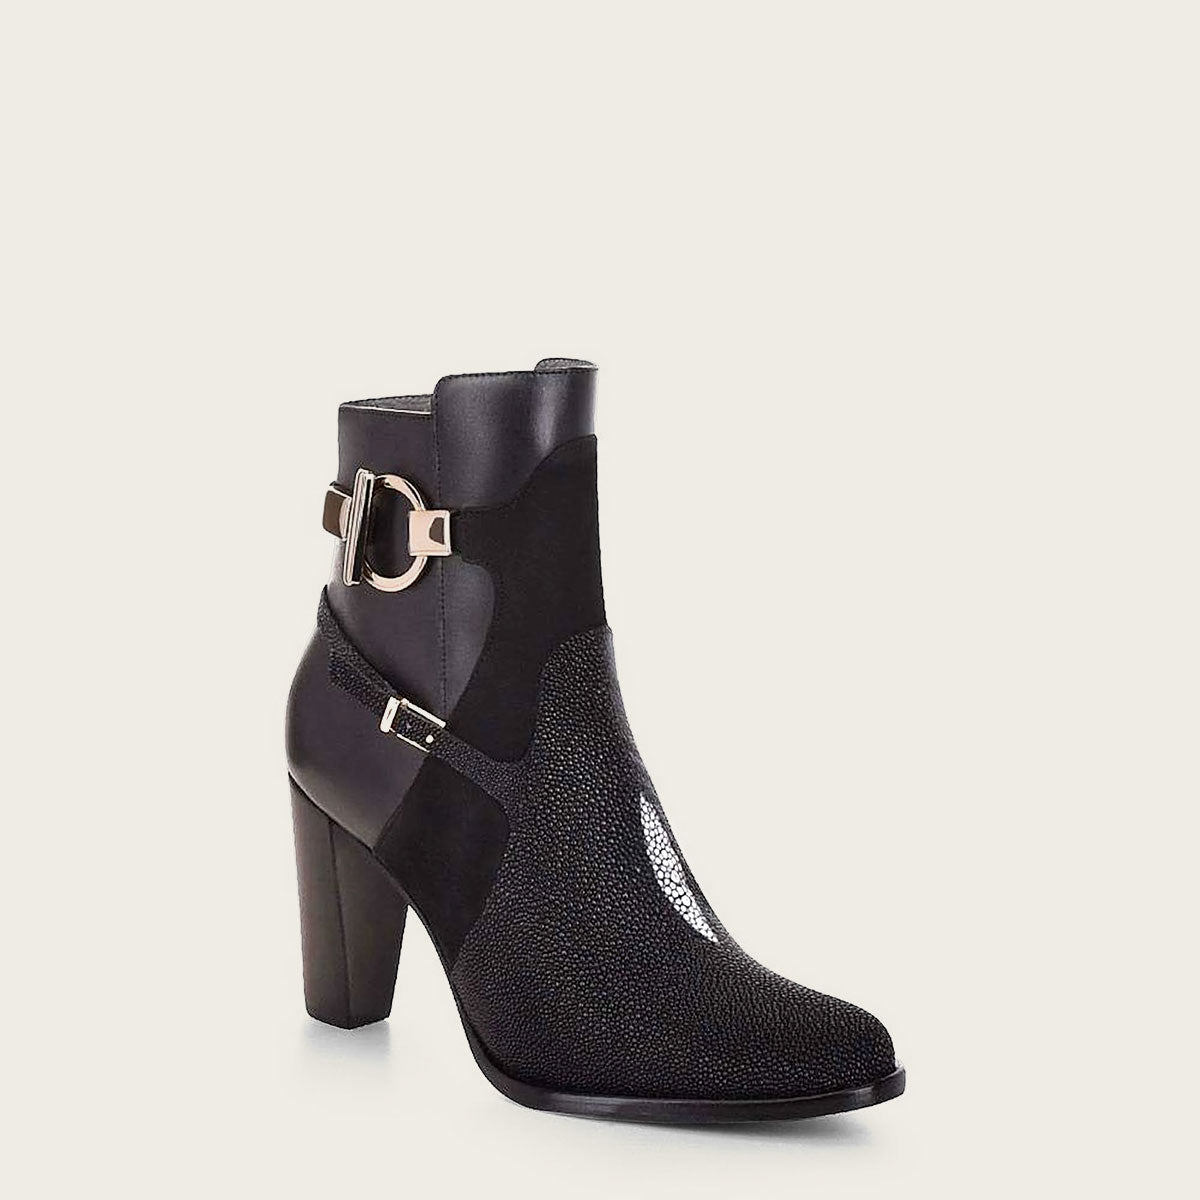 black ankle boots for women - 3G5MTVL - Cuadra Shop